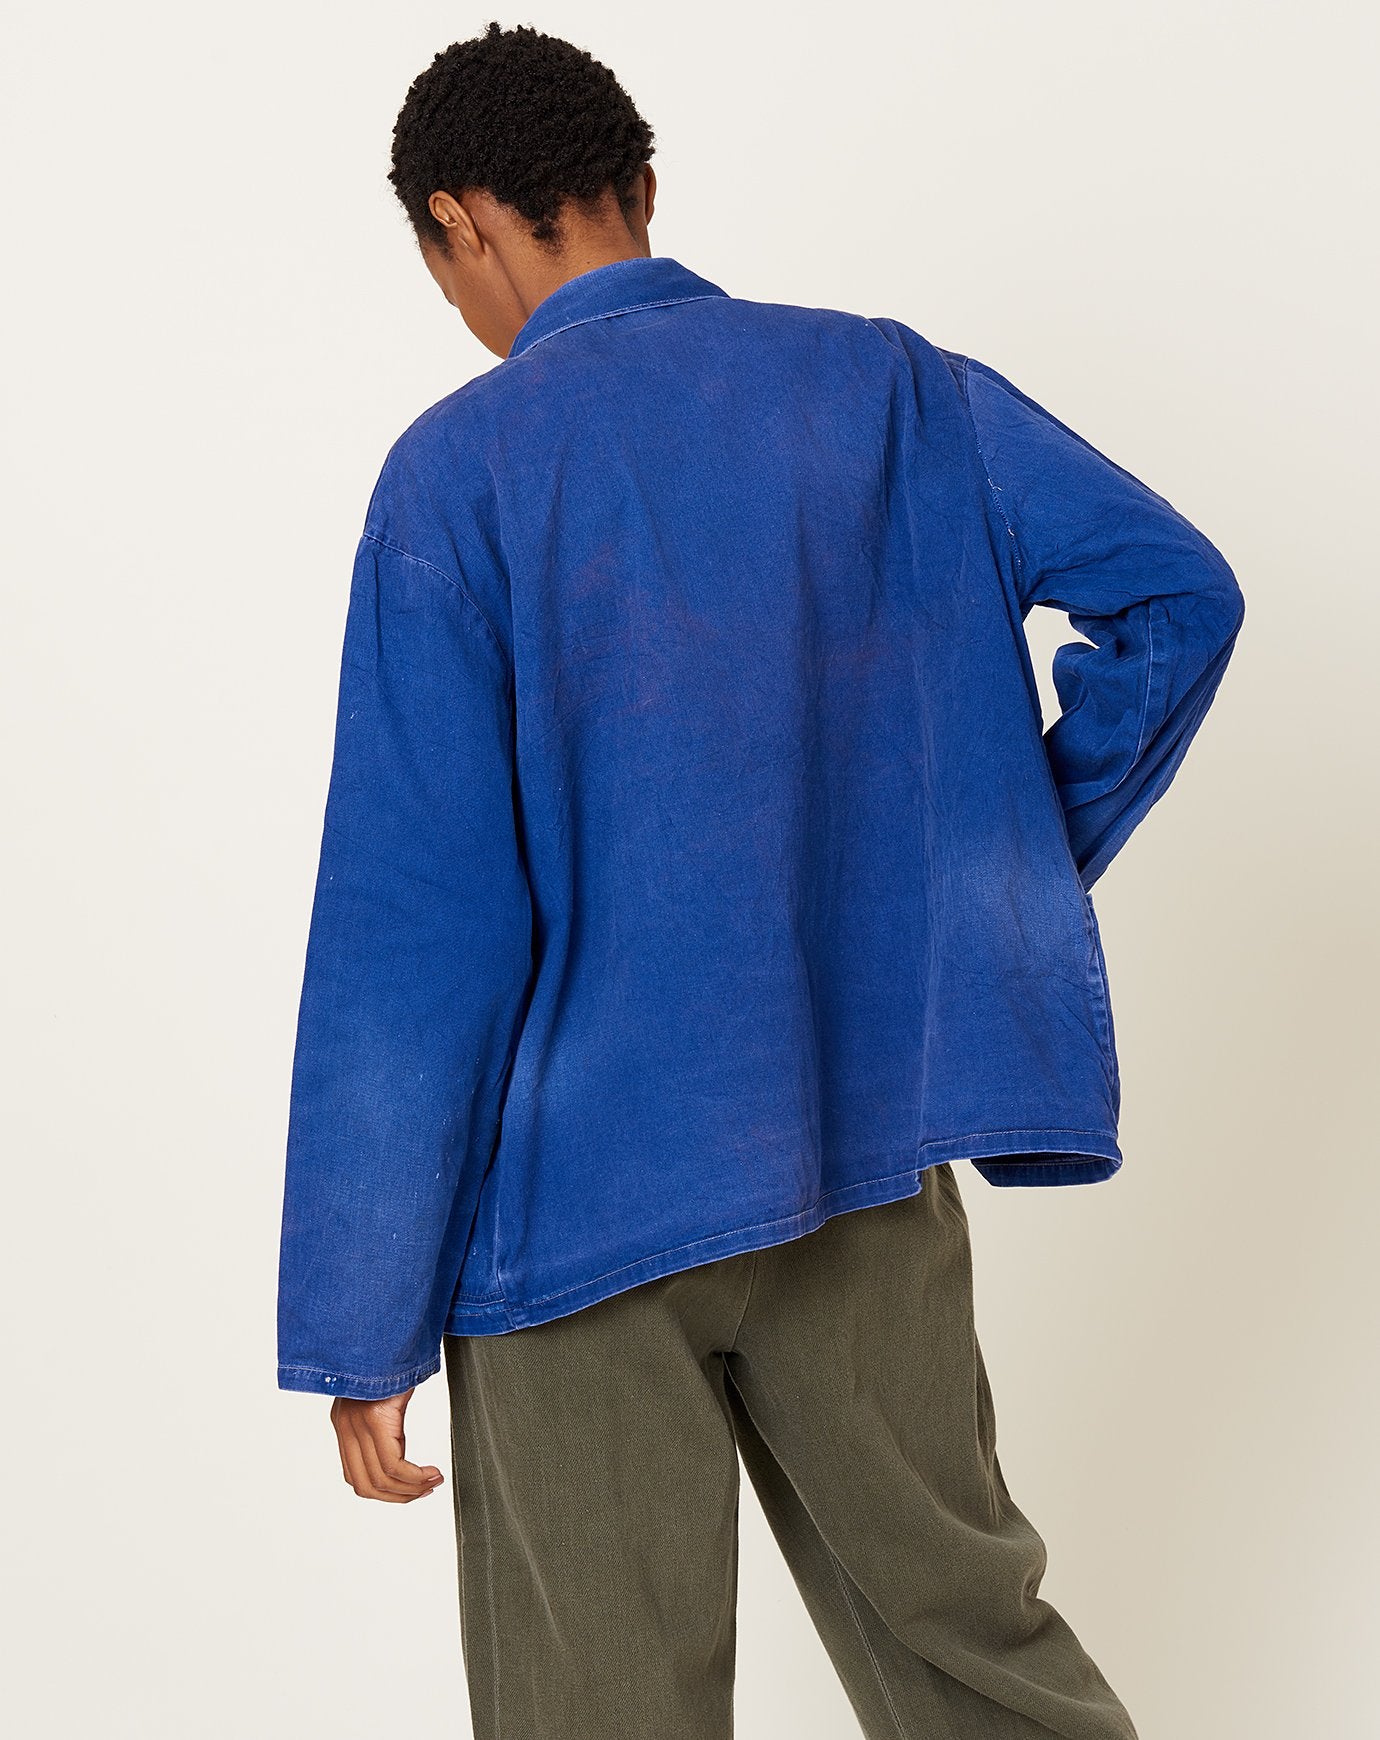 Indigo Distressed Pocket Chore Jacket